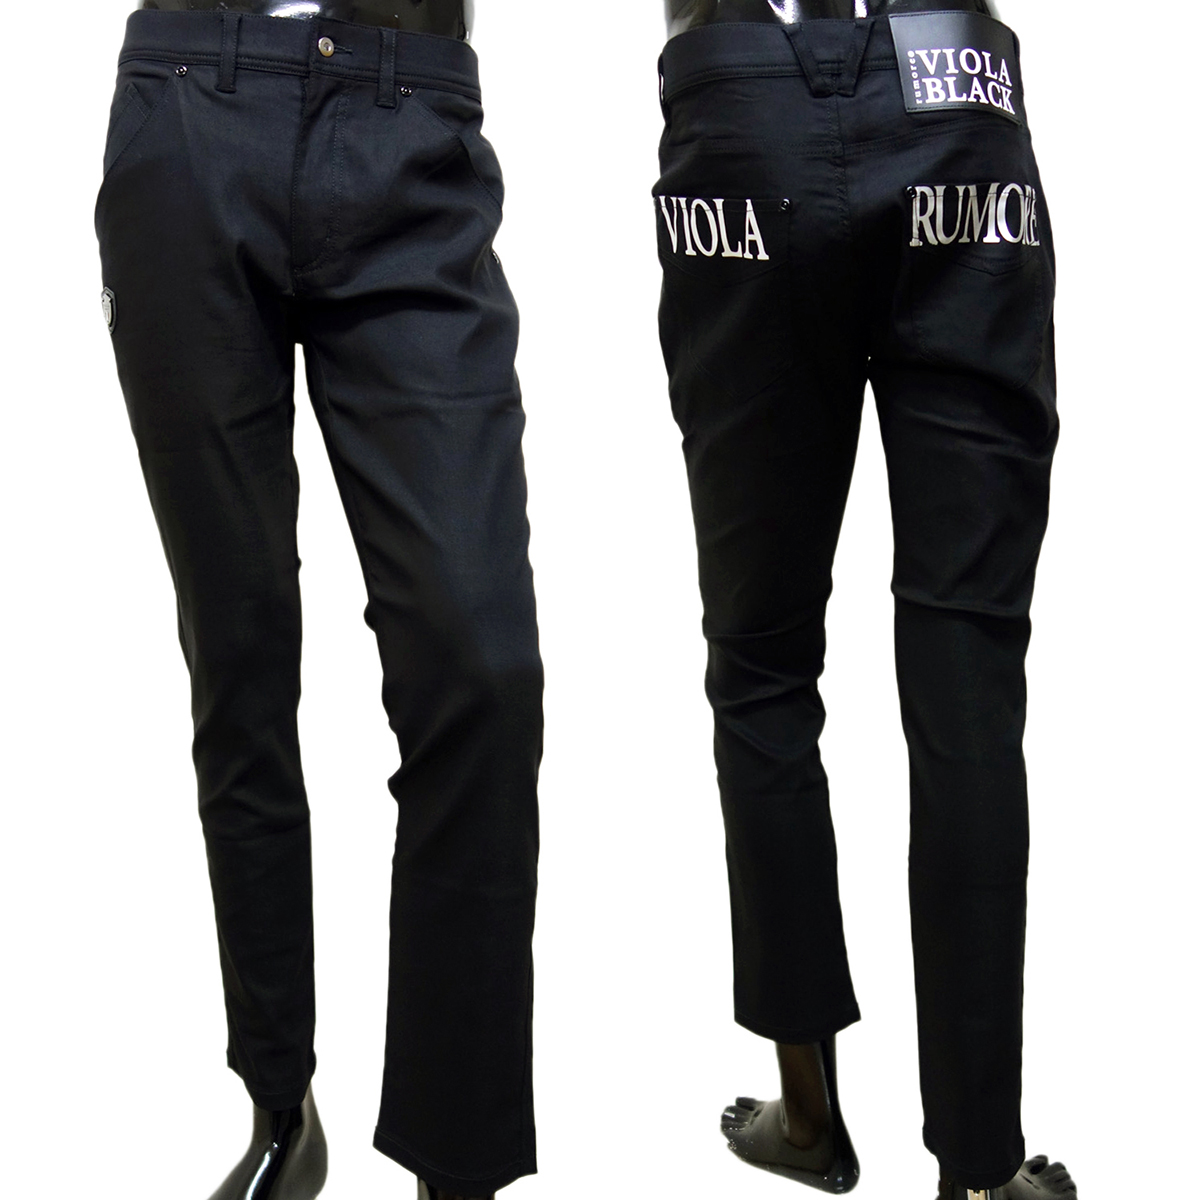  vi Ora viola длинные брюки низ мужской чёрный Y42306